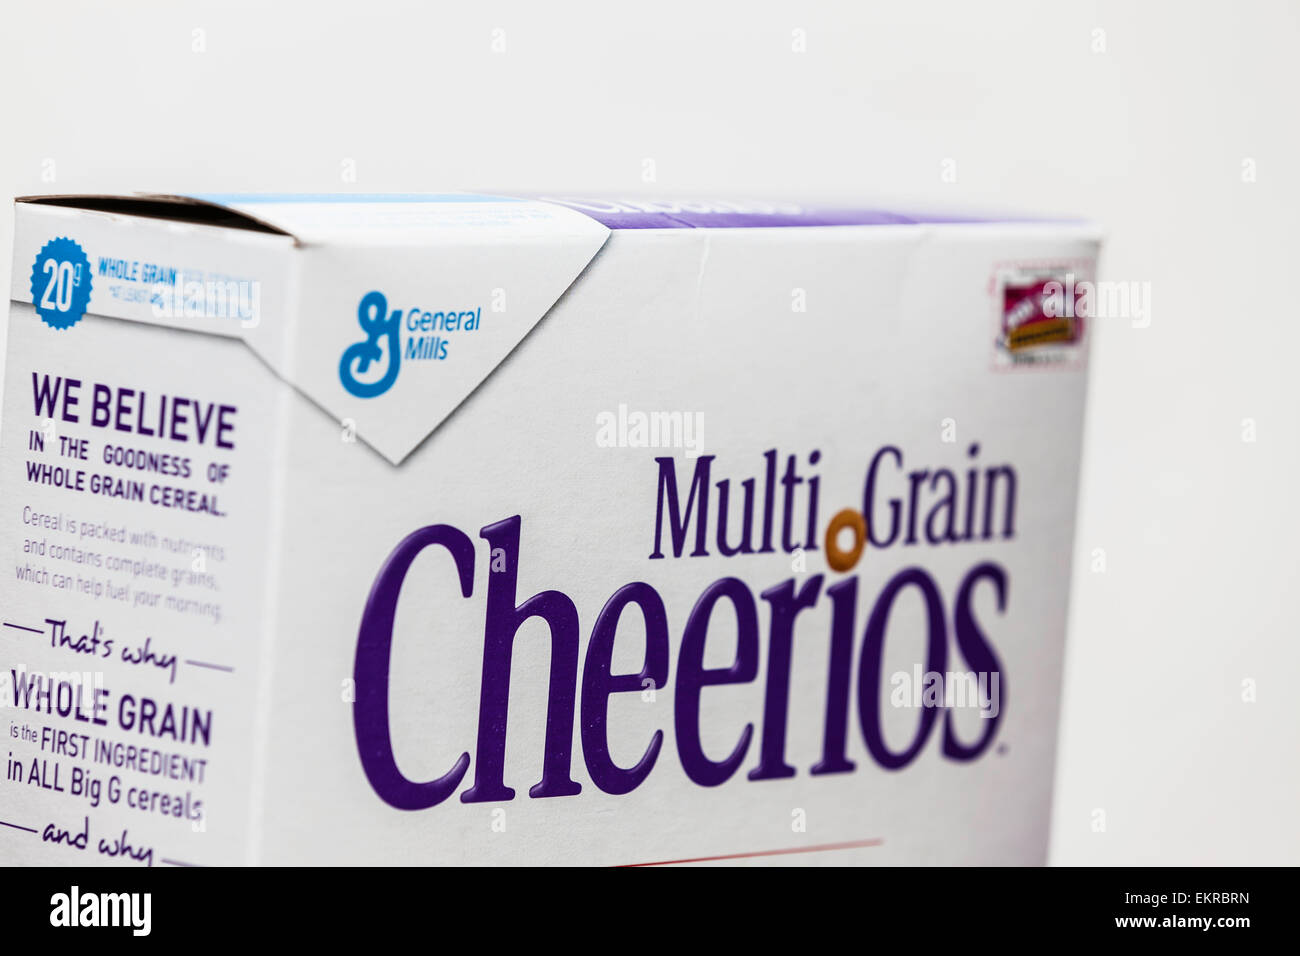 Eine Schachtel mit Vollkorn Cheerios und General Mills Logo.  General Mills gilt als Top-Kandidat für eine Übernahme. Stockfoto